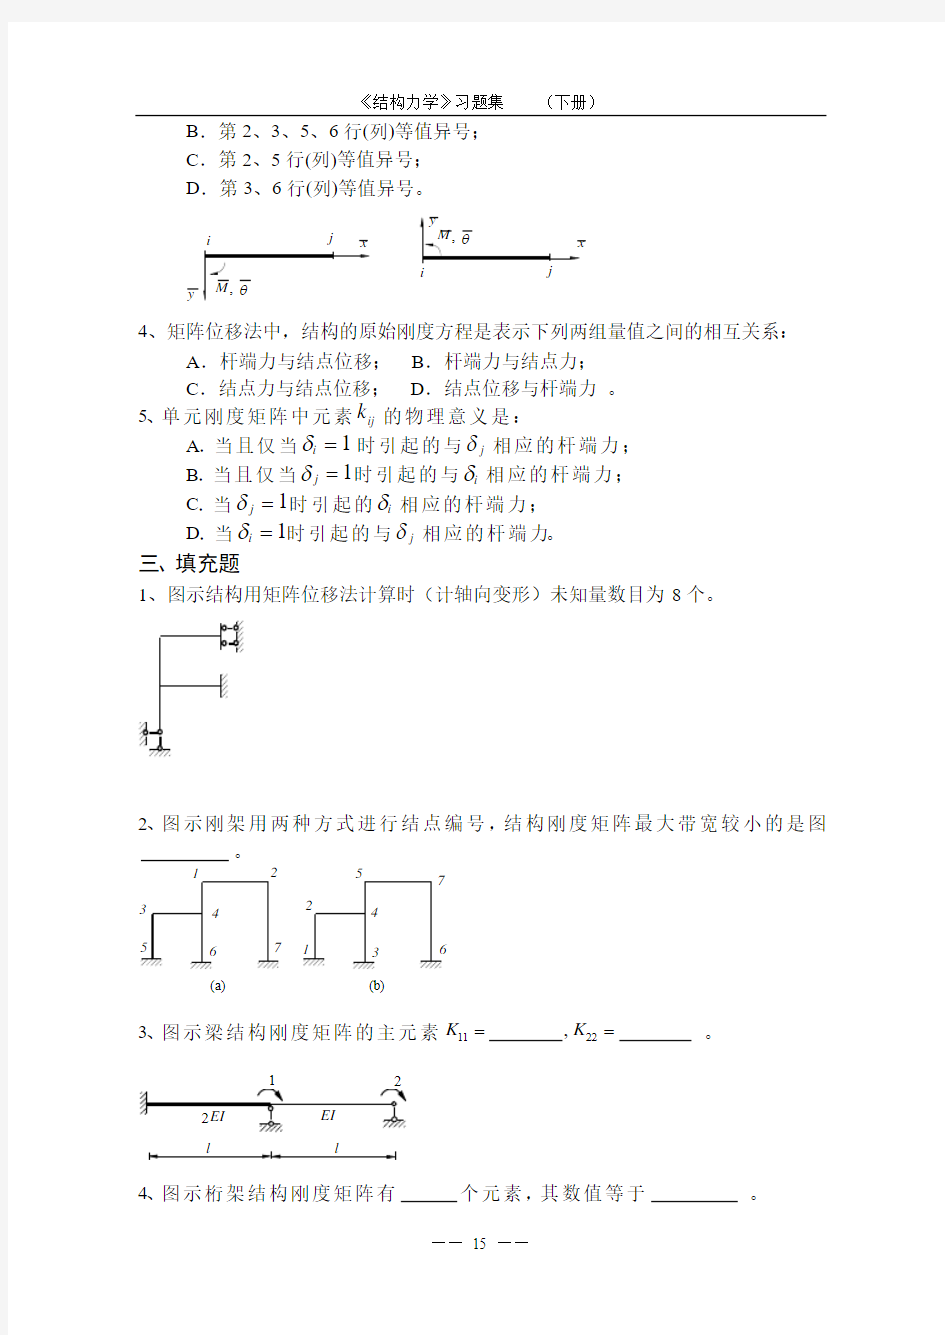 《结构力学习题集》(下)-矩阵位移法习题及答案 (2)